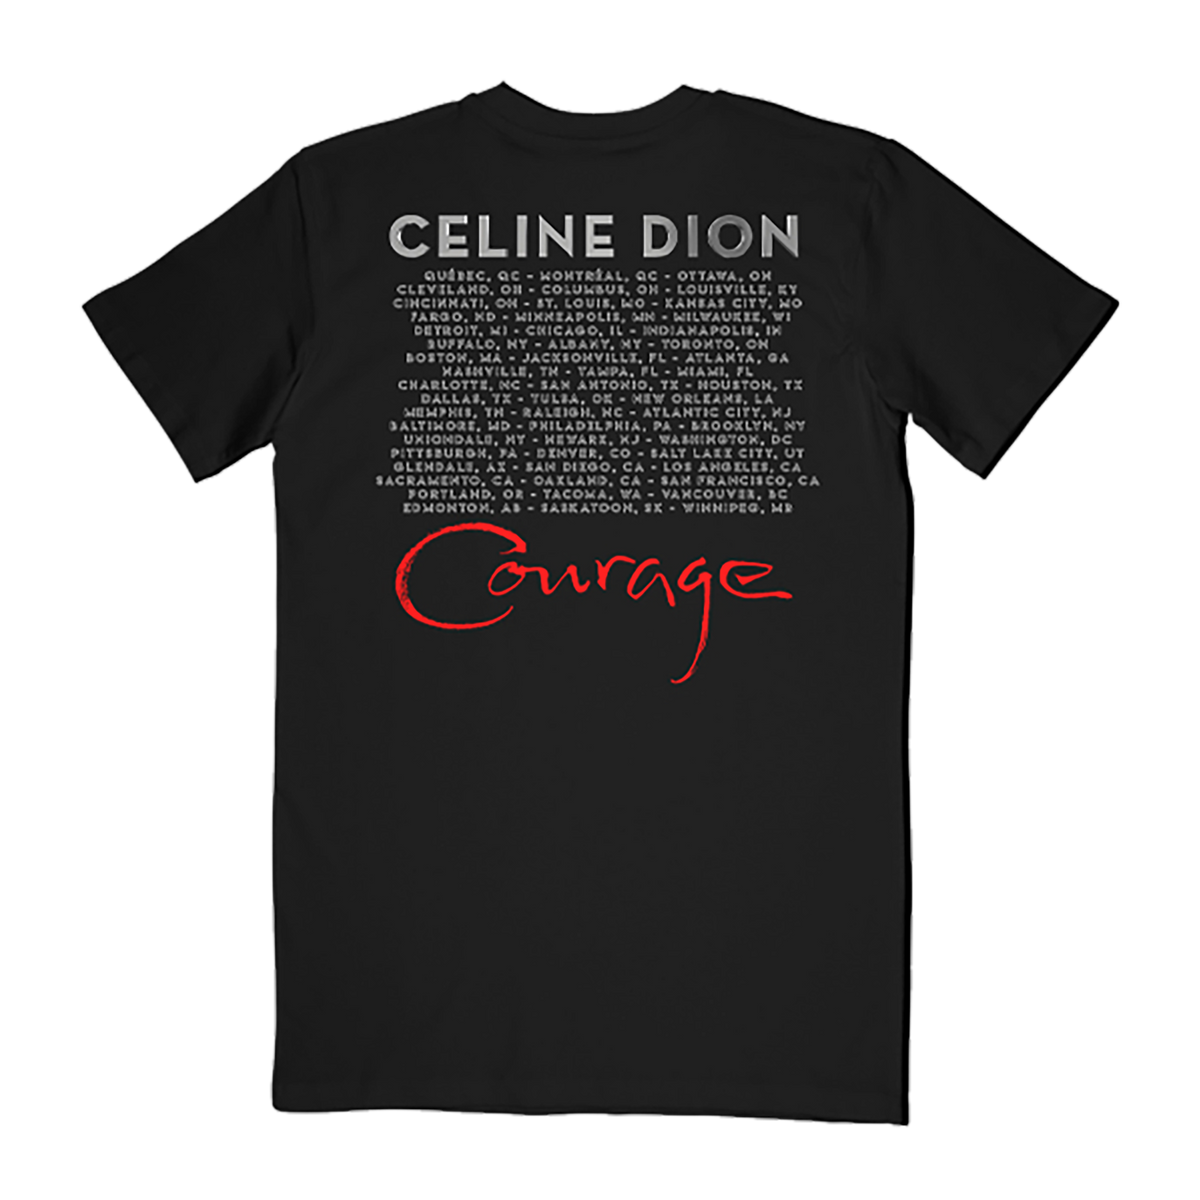 T-shirt de la tournée mondiale Courage